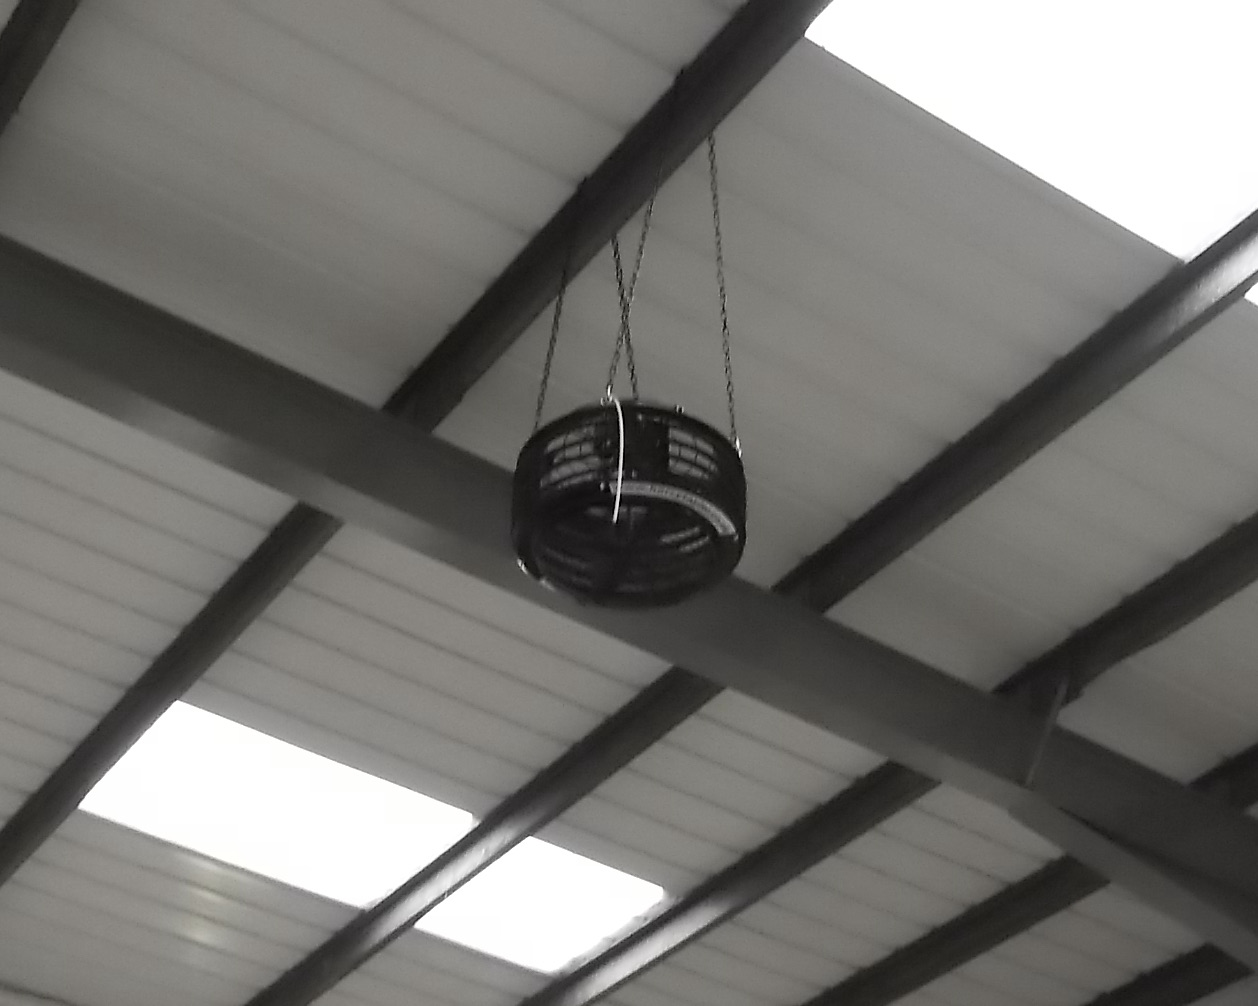 Fan mounted in a Factory